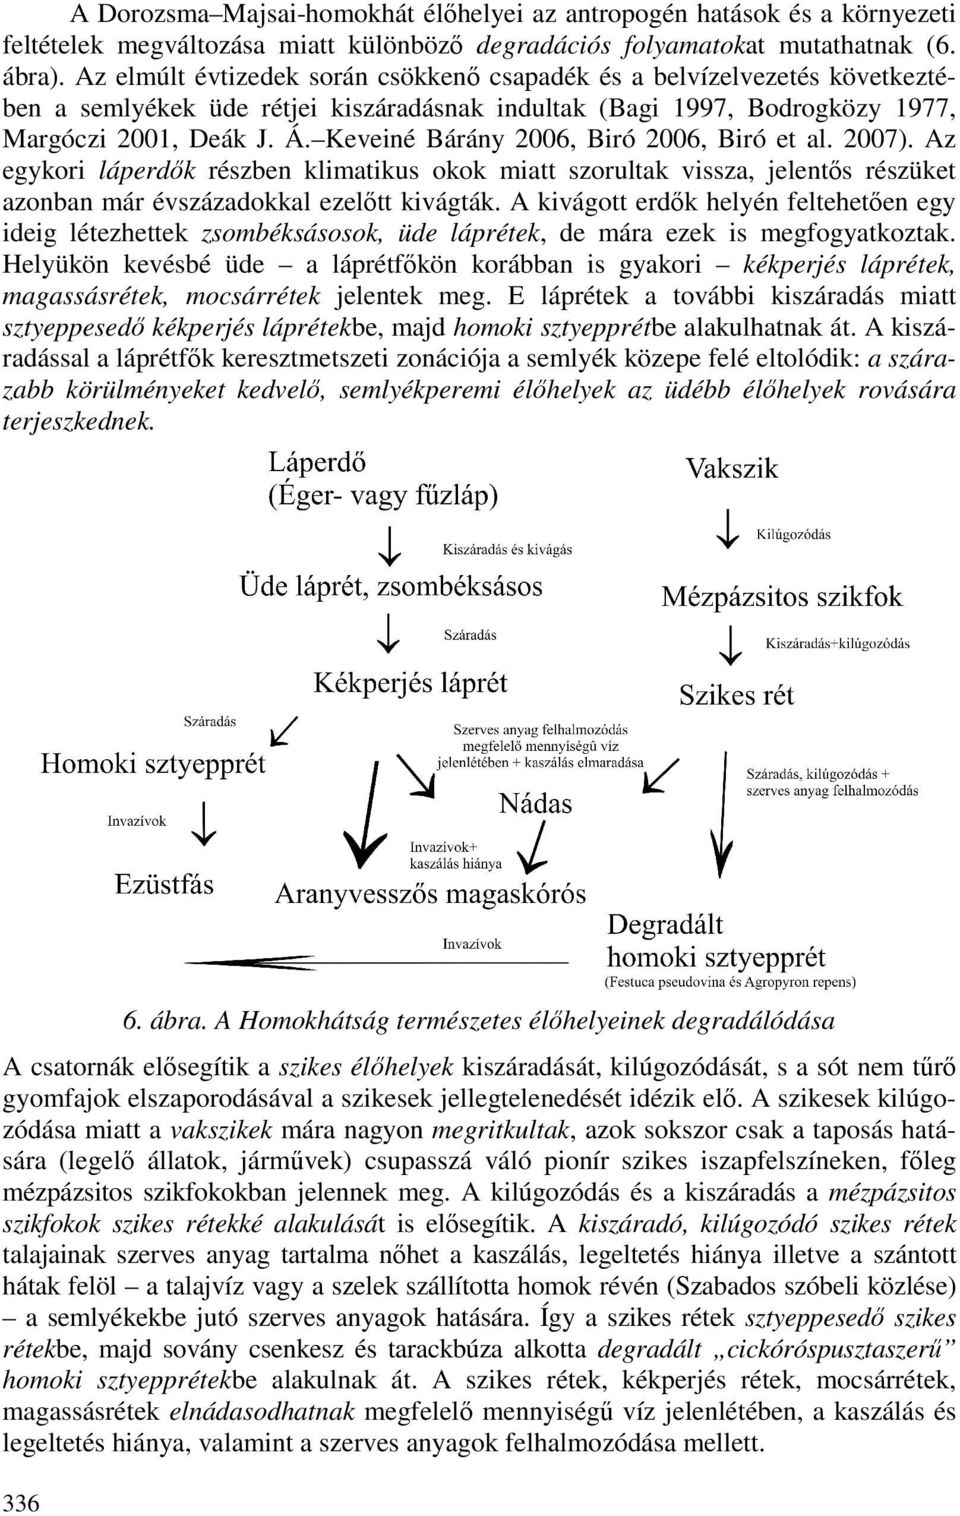 Keveiné Bárány 2006, Biró 2006, Biró et al. 2007). Az egykori láperdık részben klimatikus okok miatt szorultak vissza, jelentıs részüket azonban már évszázadokkal ezelıtt kivágták.